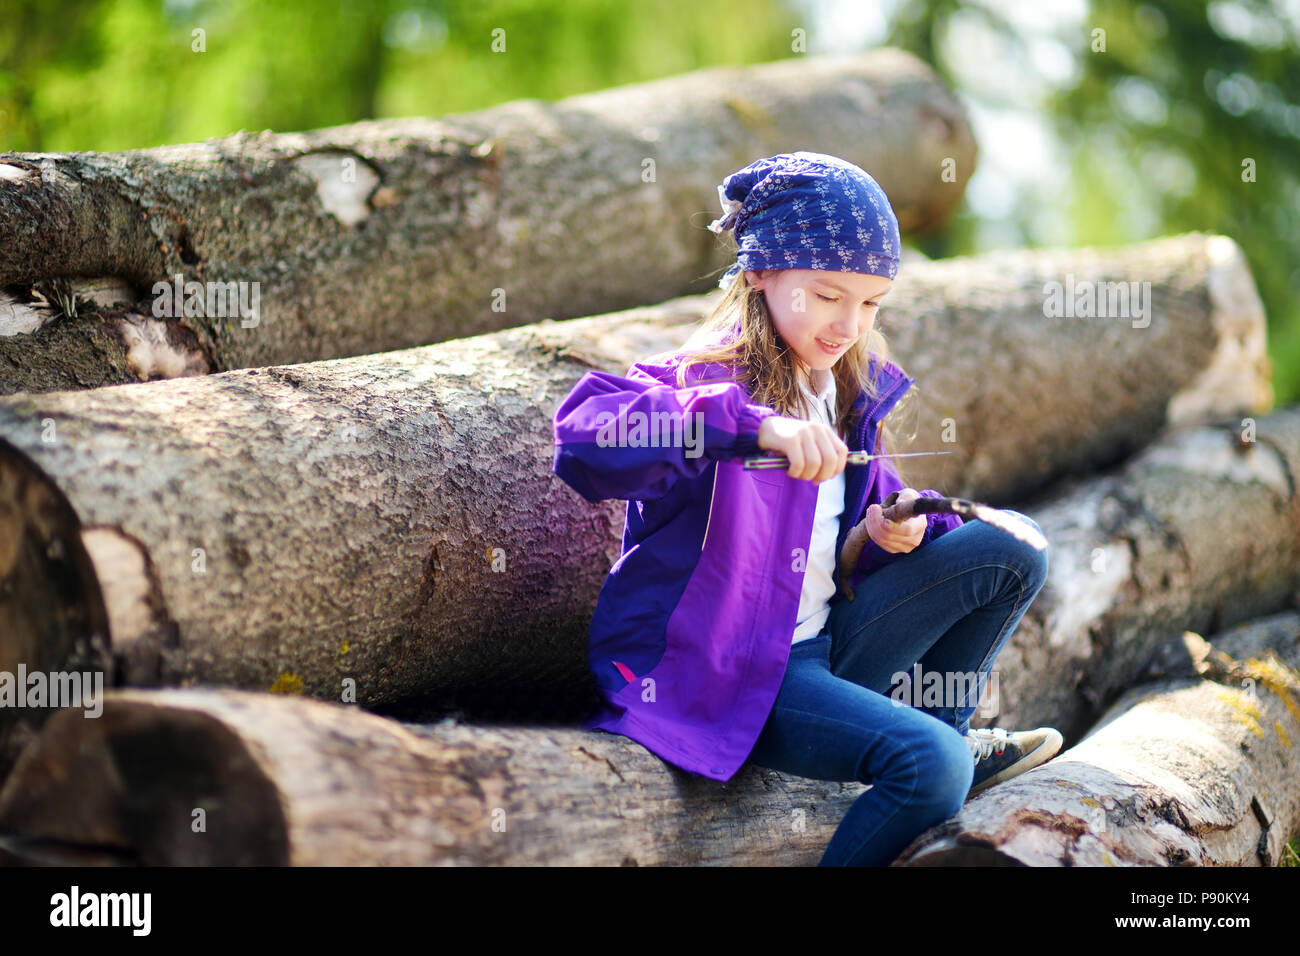 Süße kleine Mädchen sitzen auf Baum Archive mit einem Taschenmesser eine  wandern Stick zu reduzieren. Kind mit einem schnitzmesser Stockfotografie -  Alamy